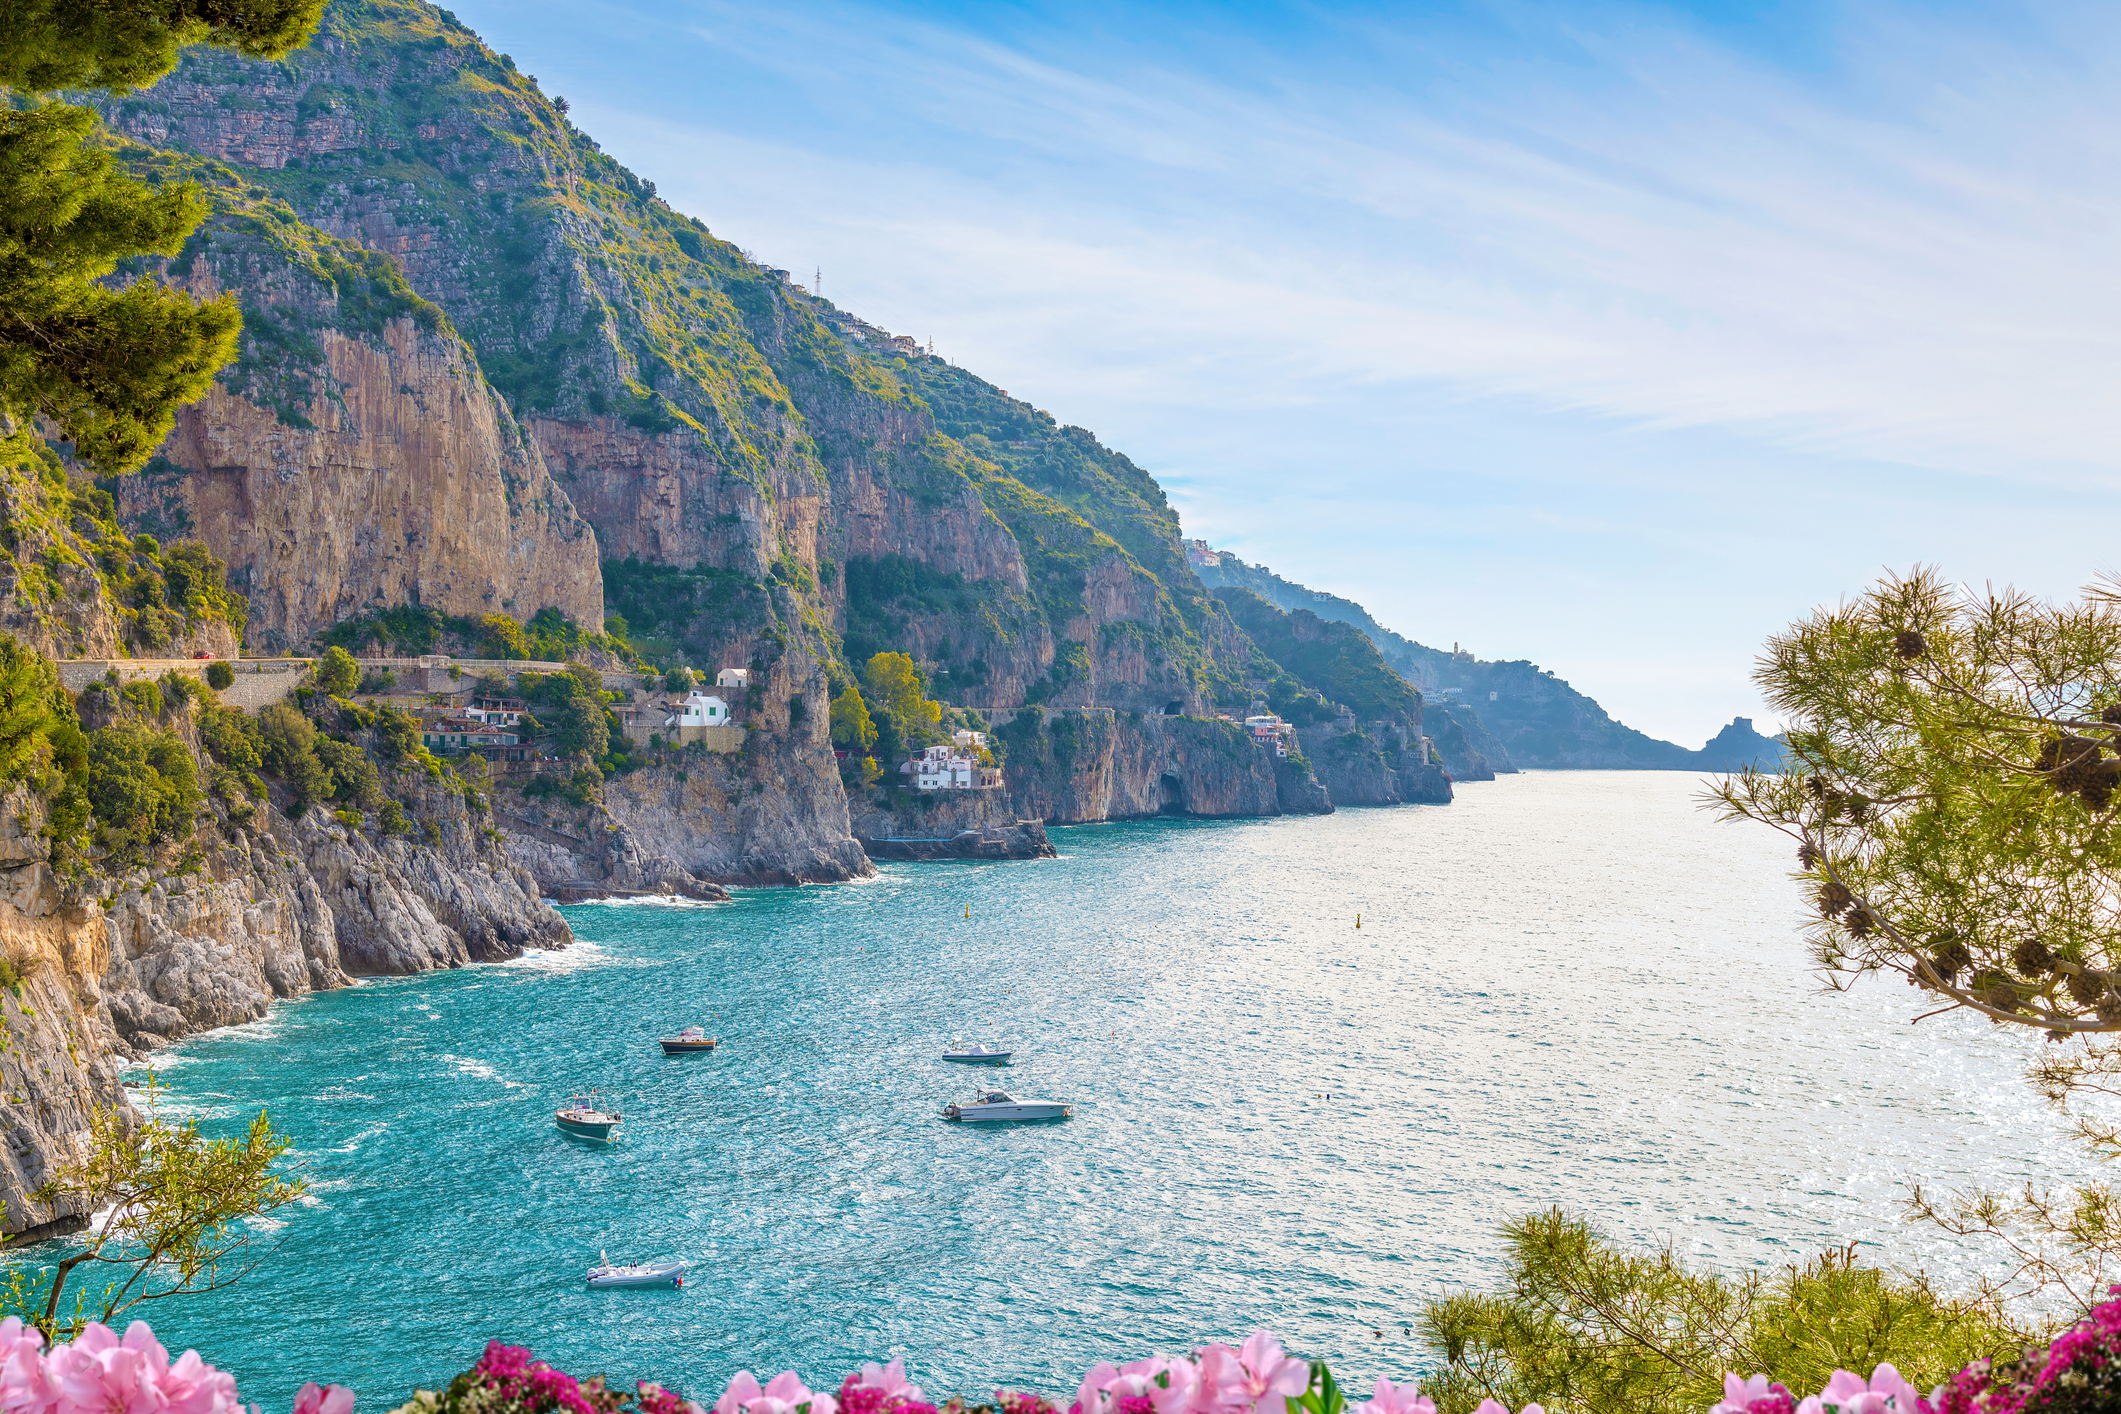 La costa amalfitana también figura en la lista de lugares que no hay que visitar en 2023 por su problema de exceso de turismo (Getty Images)